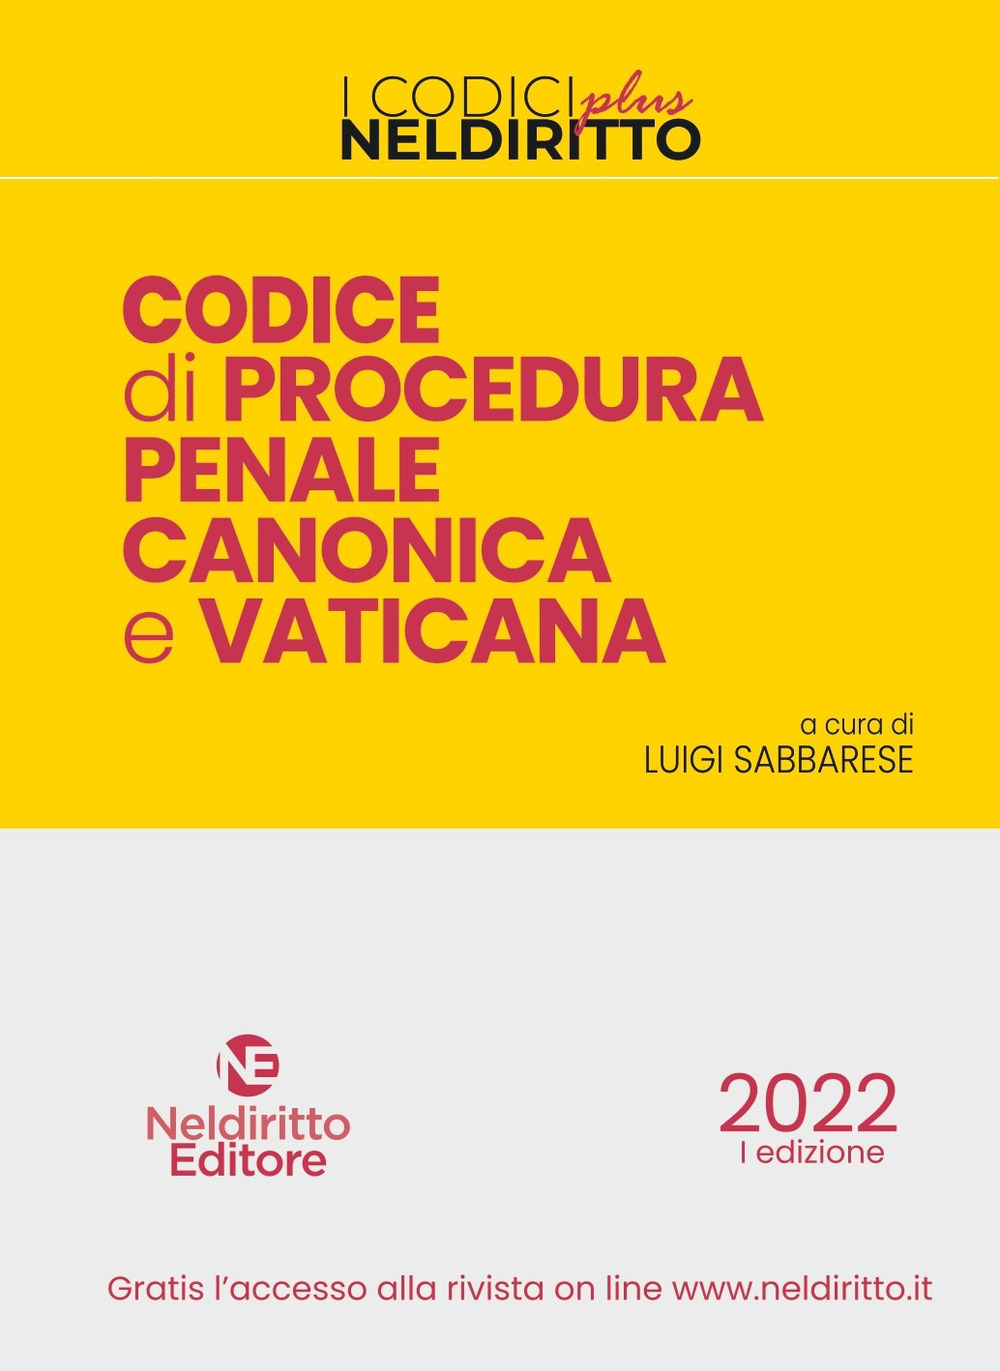 Libri Codice Di Procedura Penale Canonica E Vaticana NUOVO SIGILLATO, EDIZIONE DEL 08/02/2022 SUBITO DISPONIBILE